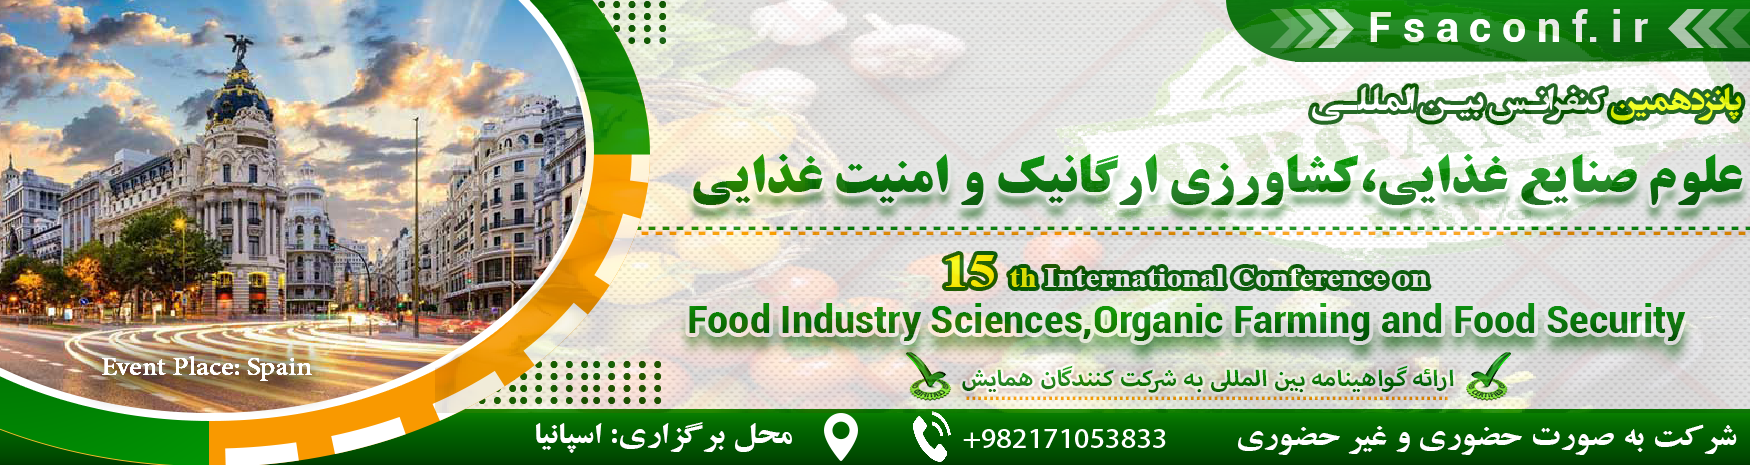 کنفرانس بین المللی علوم صنایع غذایی،کشاورزی ارگانیک و امنیت غذایی